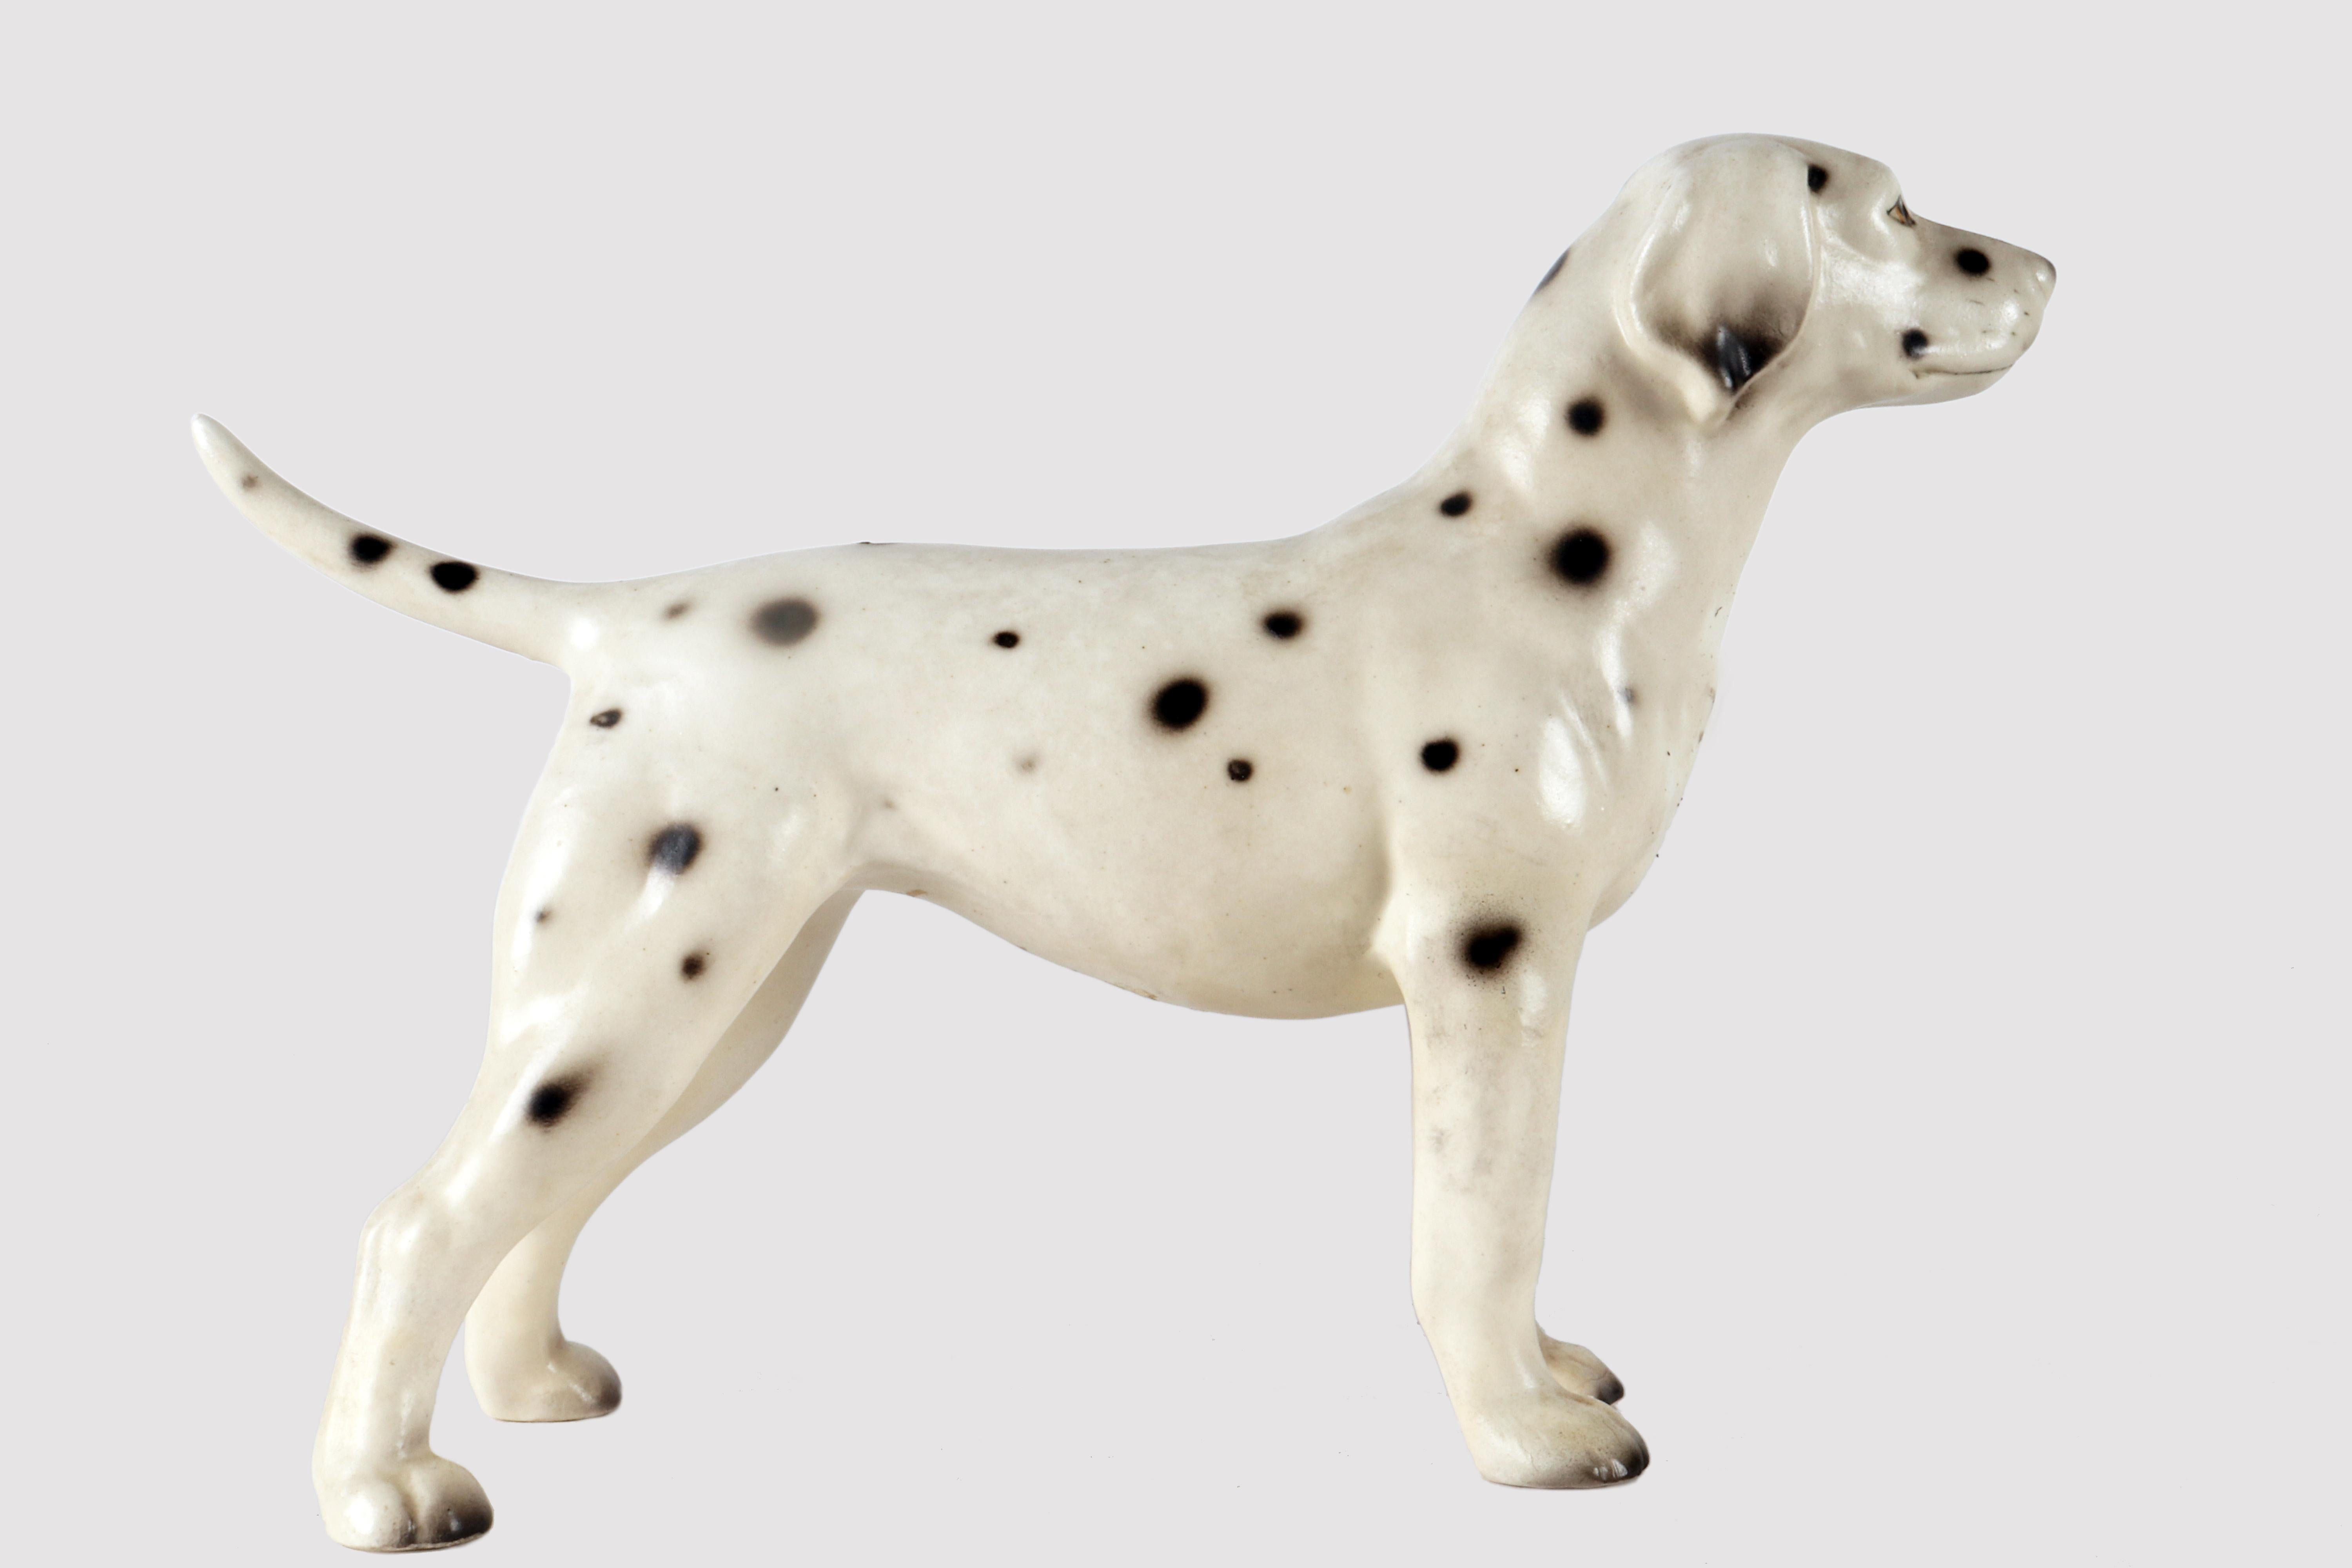 Painted ceramic sculpture depicting a Dalmatian dog. England circa 1950.